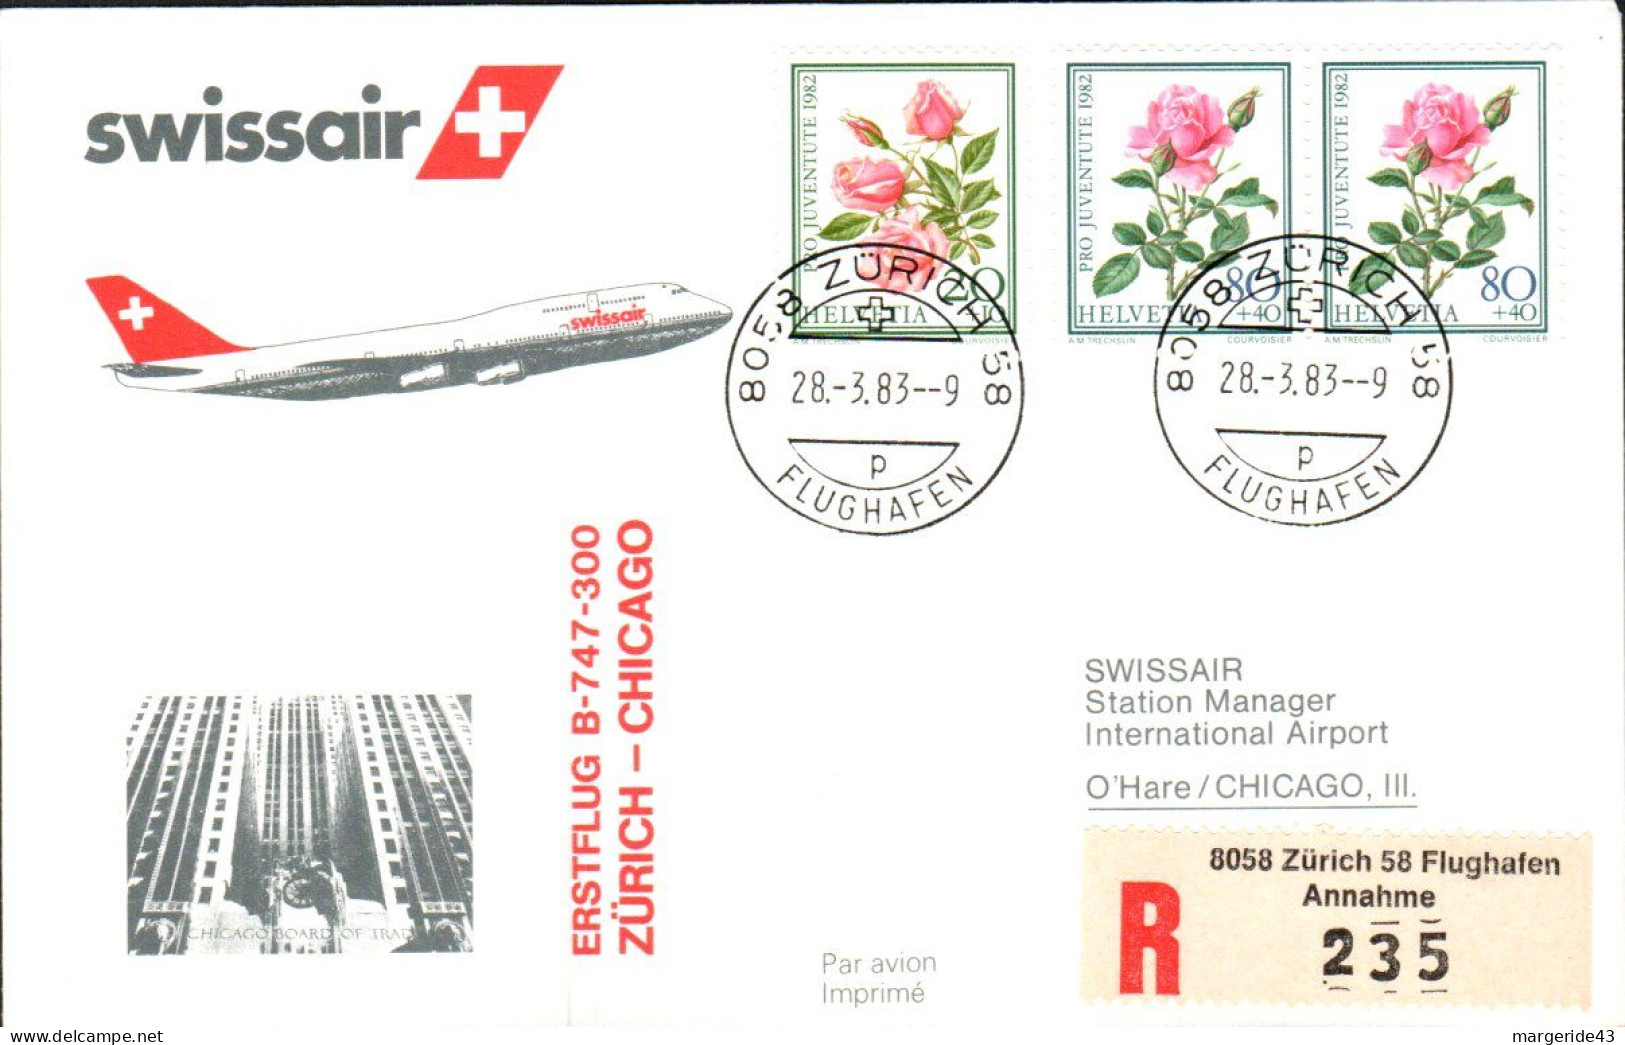 SUISSE PREMIER VOL SWISSAIR ZÜRICH-CHICAGO 1983 - Airplanes